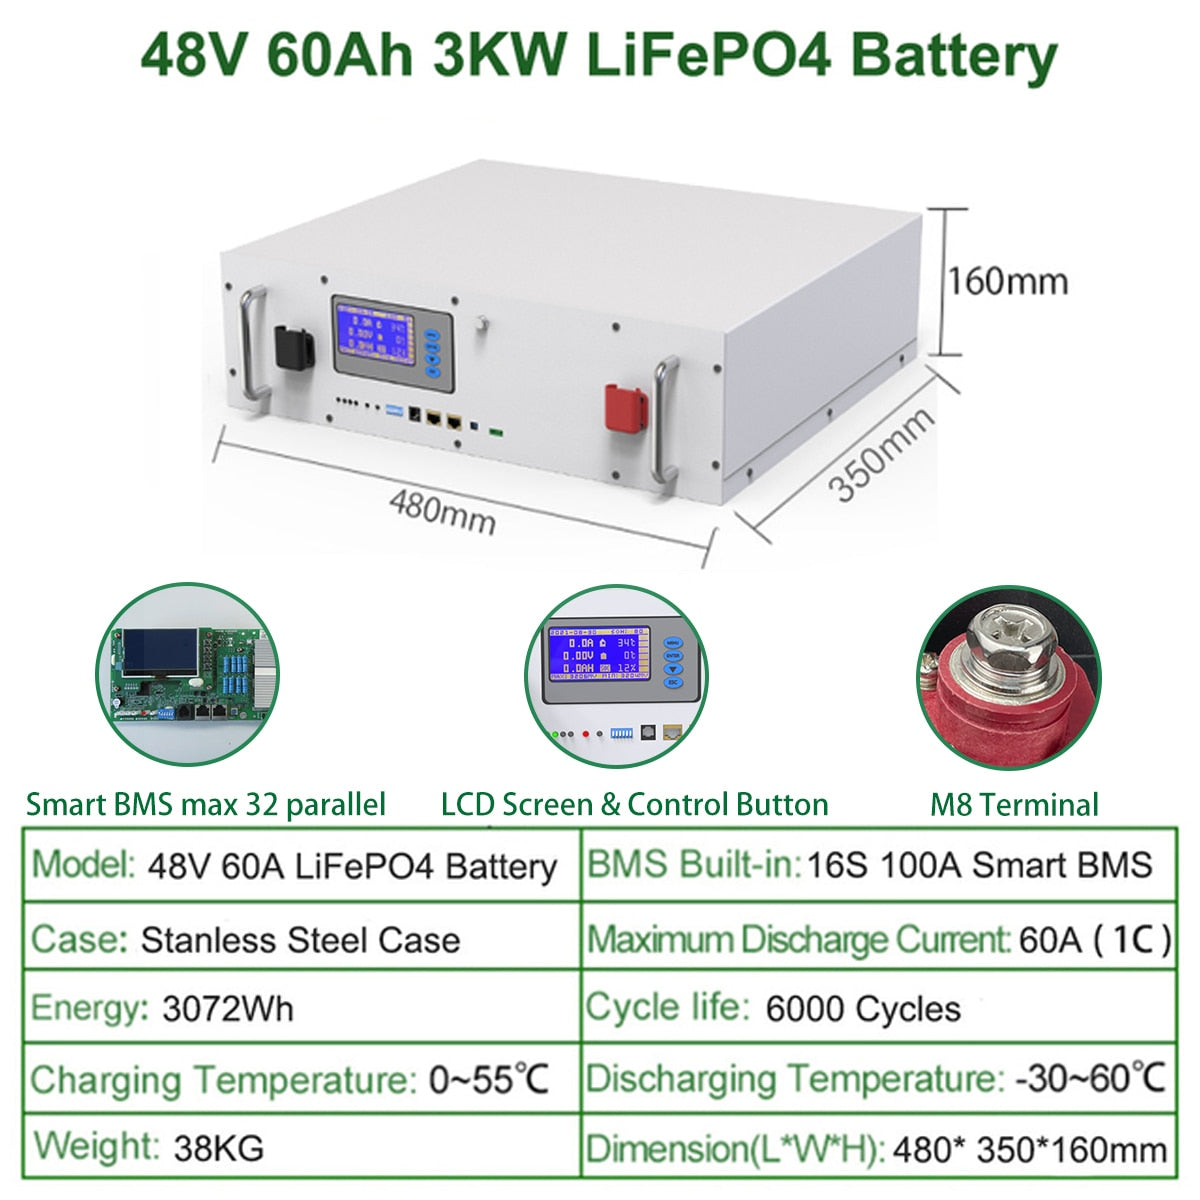 48V 60Ah 3KW LiFePO4 Battery 160